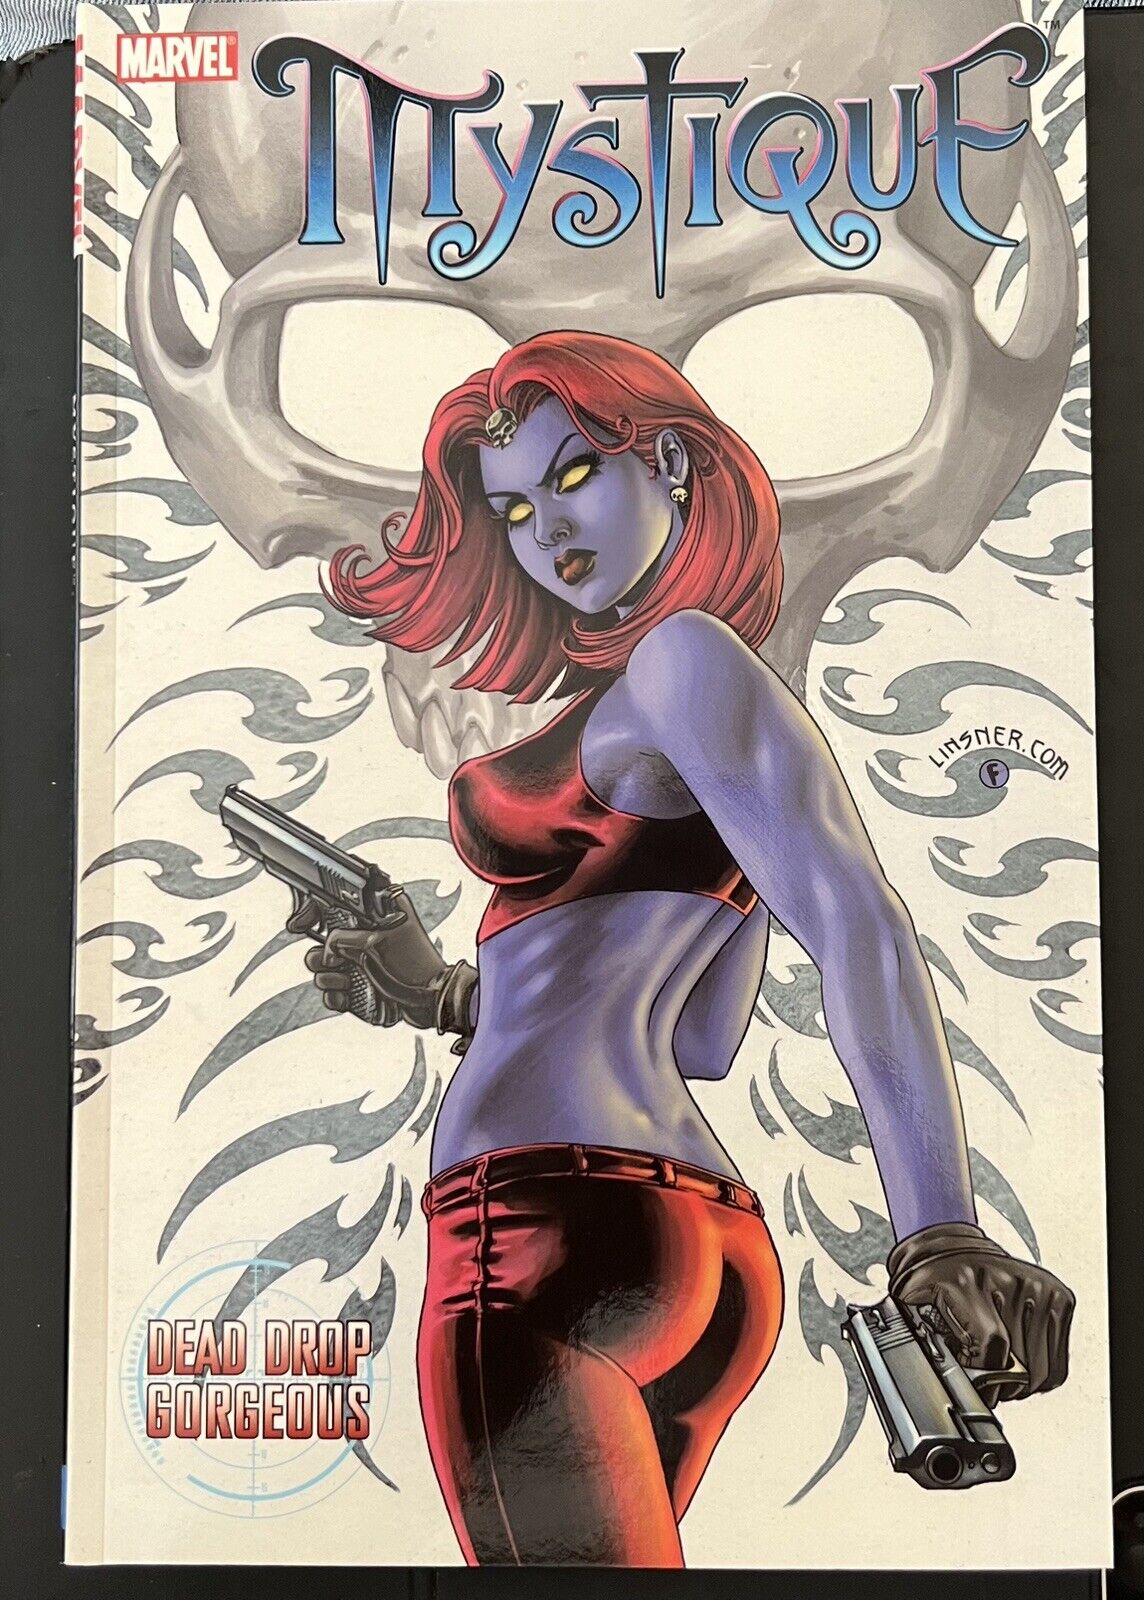 Mystique #1 (Marvel Comics June 2004)